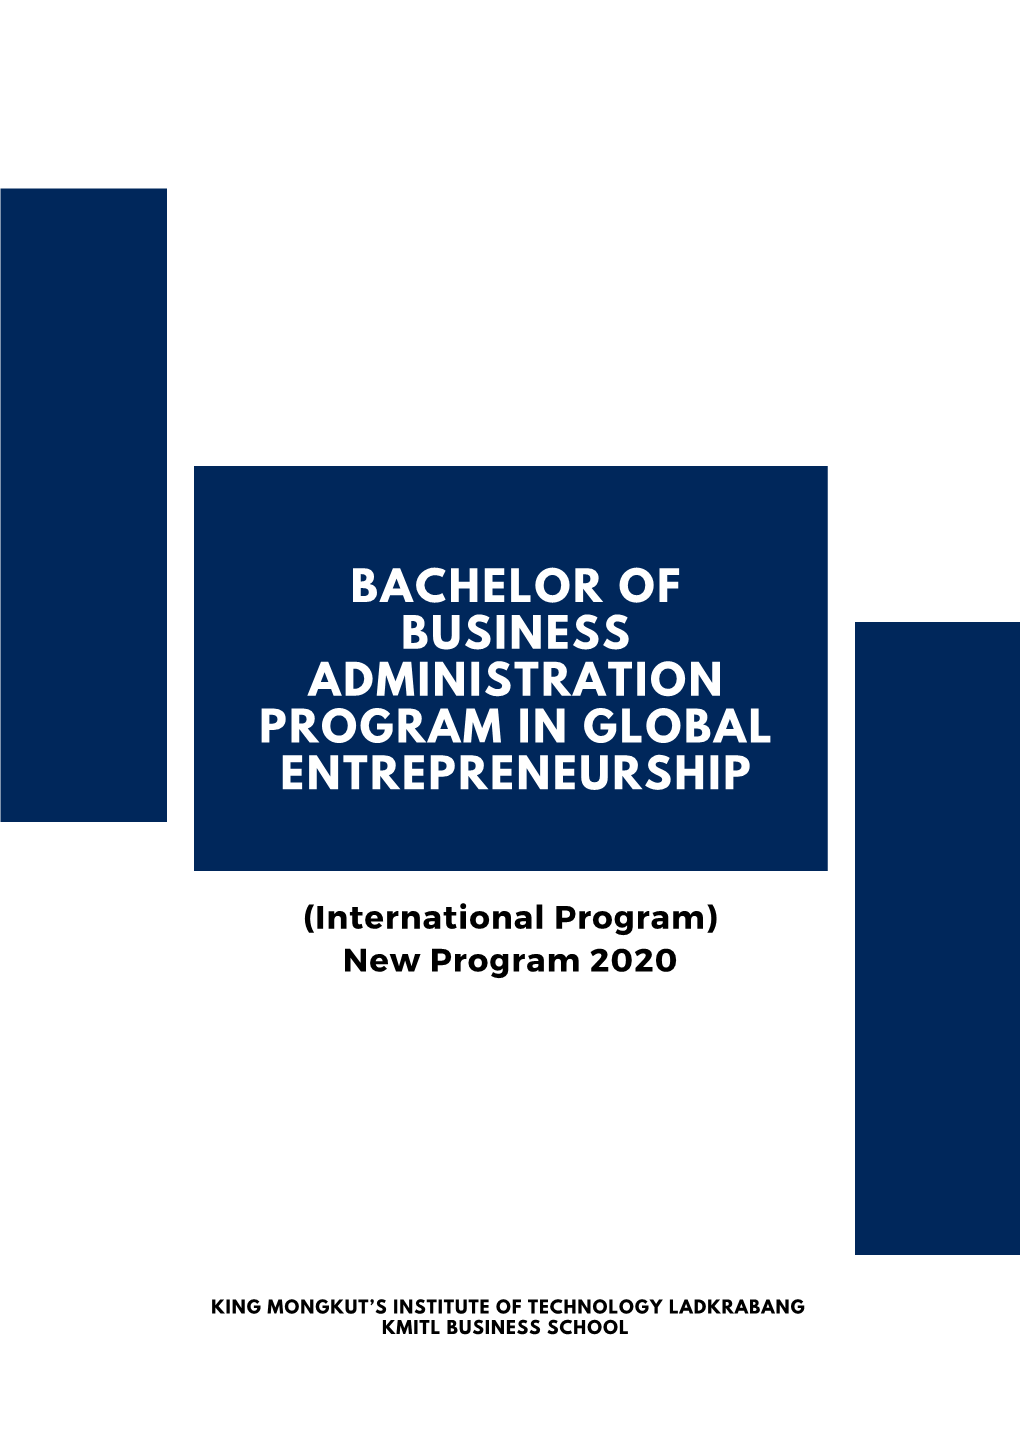 Bachelor of Business Administration Program in Global Entrepreneurship